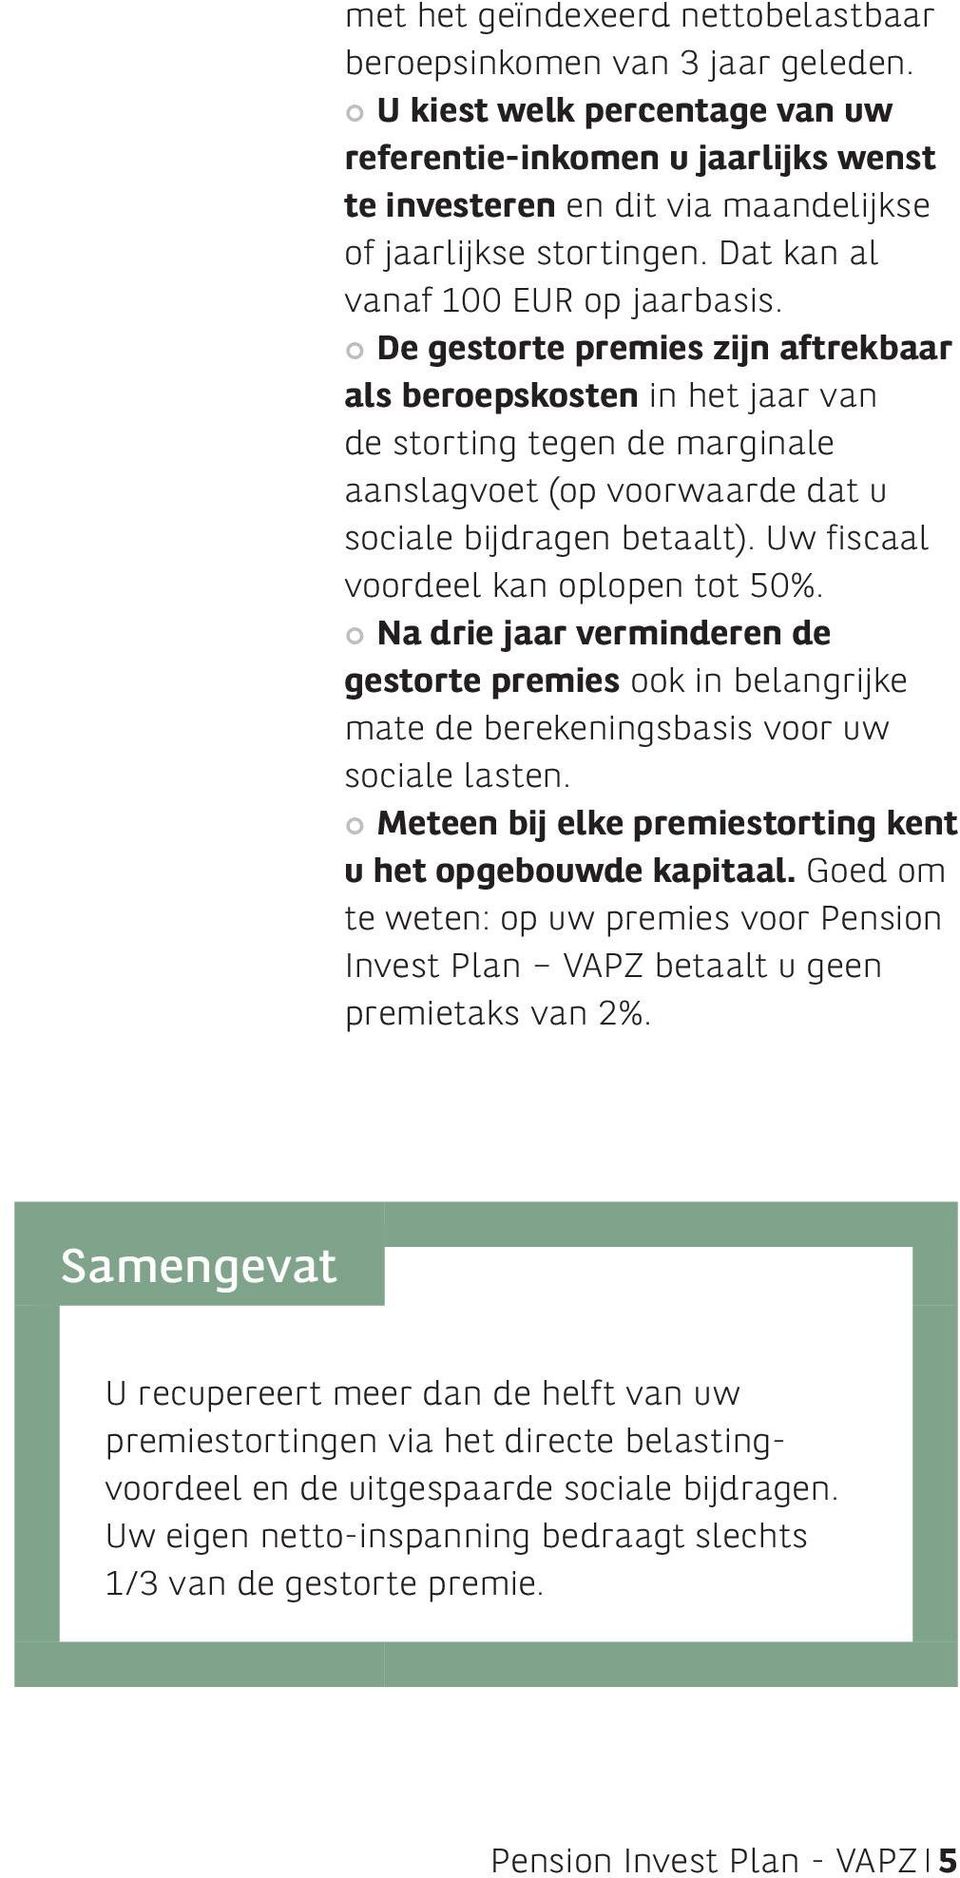 De gestorte premies zijn aftrekbaar als beroepskosten in het jaar van de storting tegen de marginale aanslagvoet (op voorwaarde dat u sociale bijdragen betaalt).